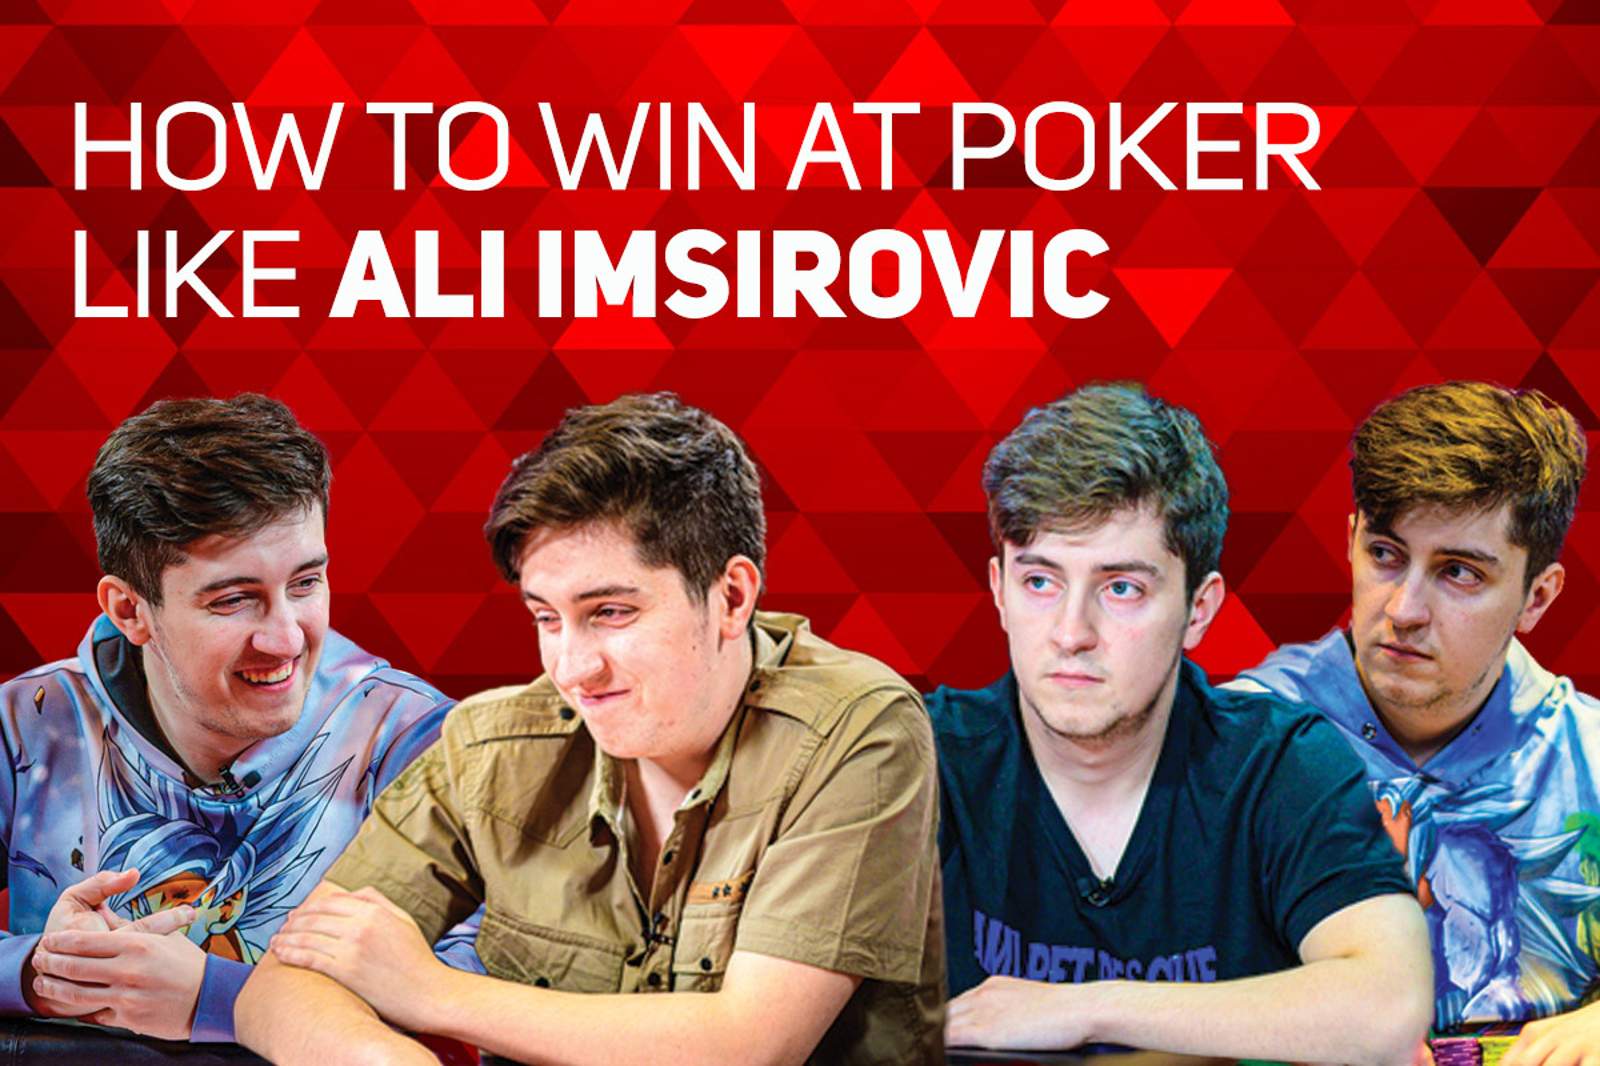 How to Win at Poker Like Ali Imsirovic